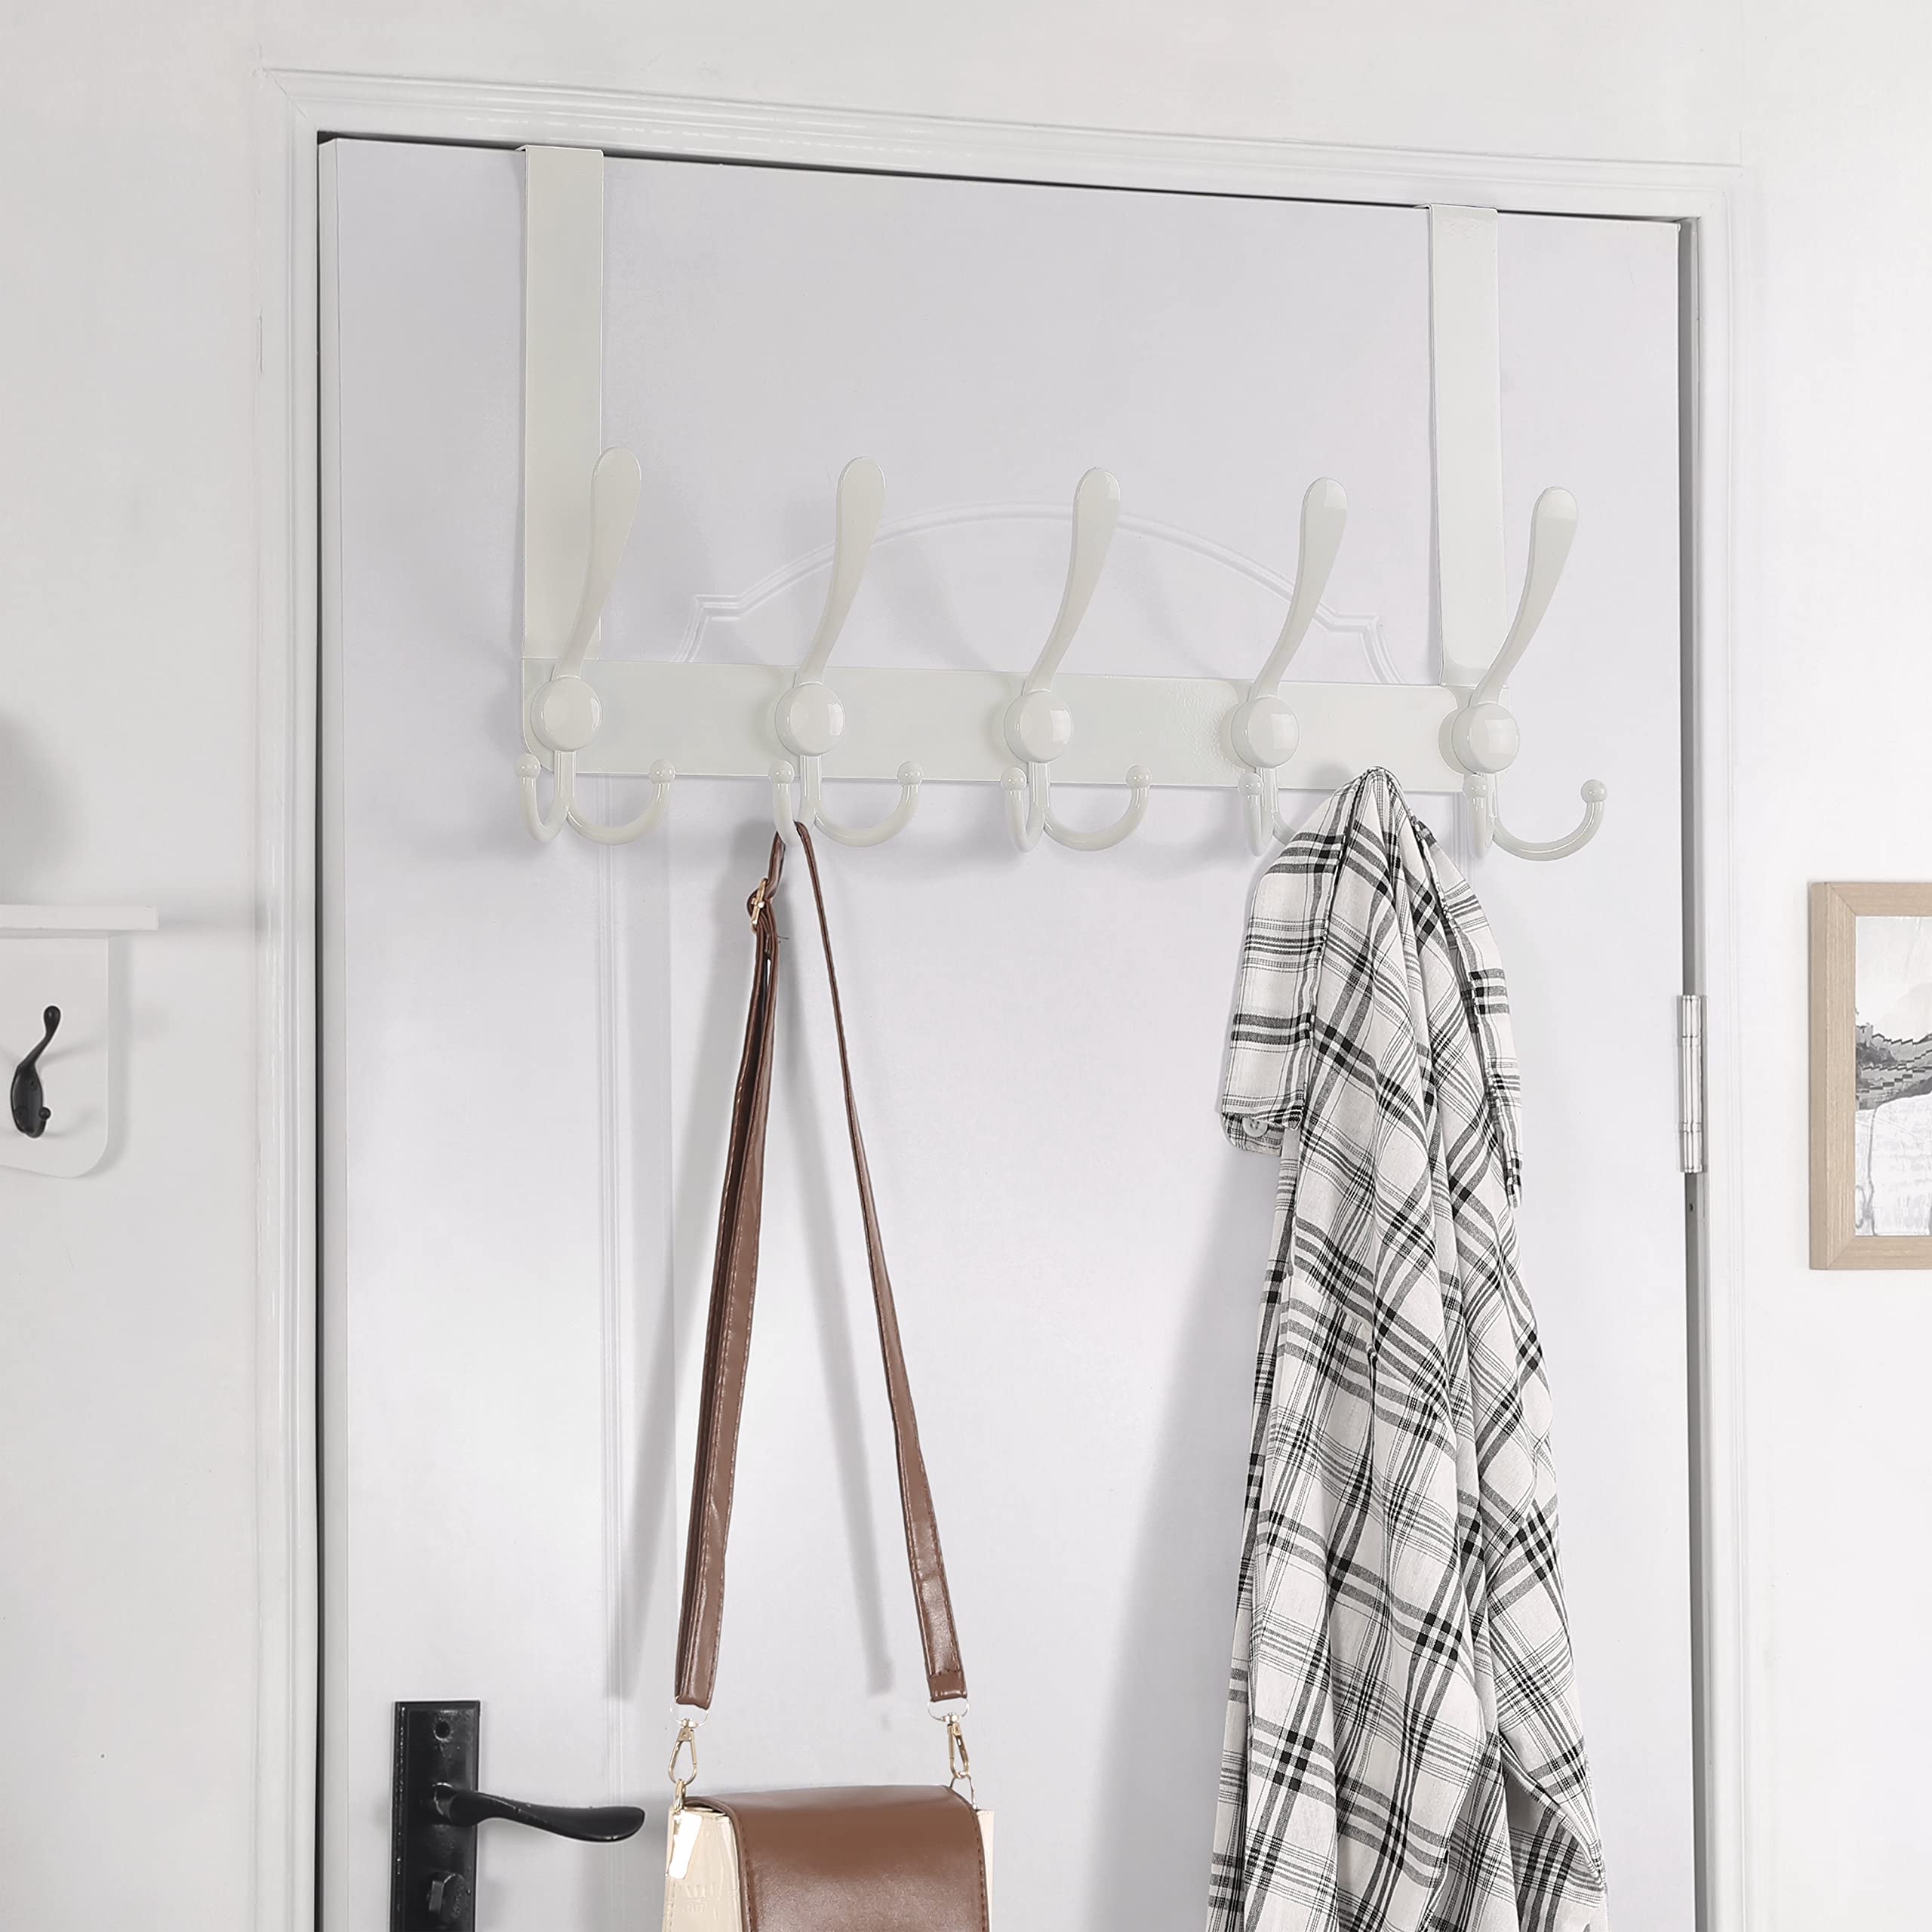 Dseap Over The Door Hook Hanger - 5 Tri Hooks, Heavy Duty Over The Door Towel Rack Coat Rack for Clothes Hat Towel, White, 2 Packs